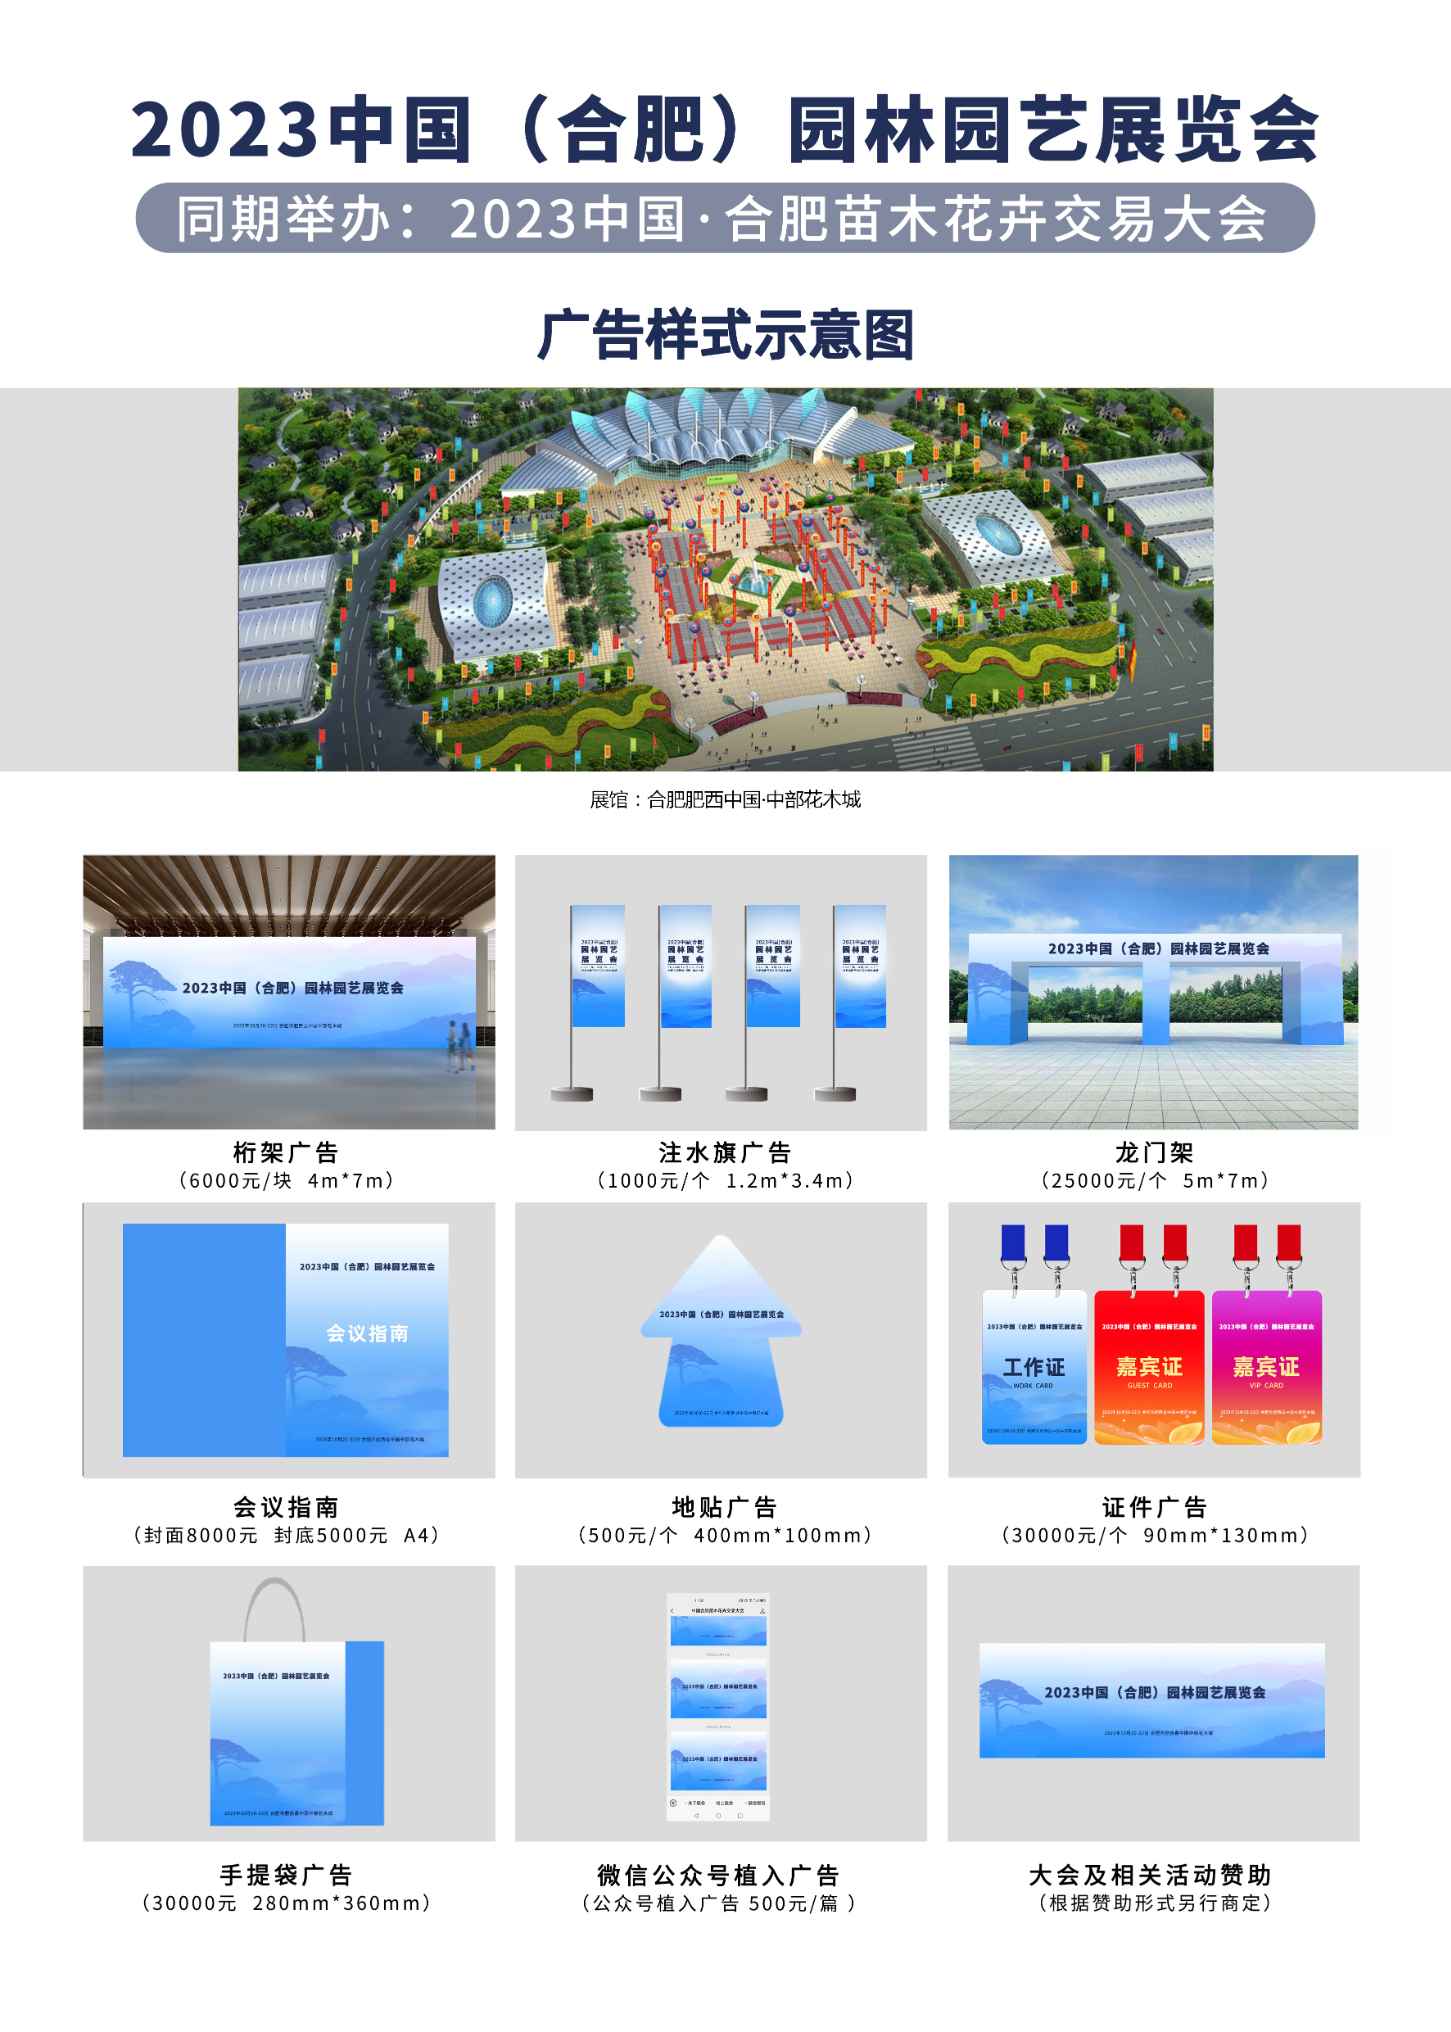 2023中国（合肥）园林园艺展览会广告样式示意图